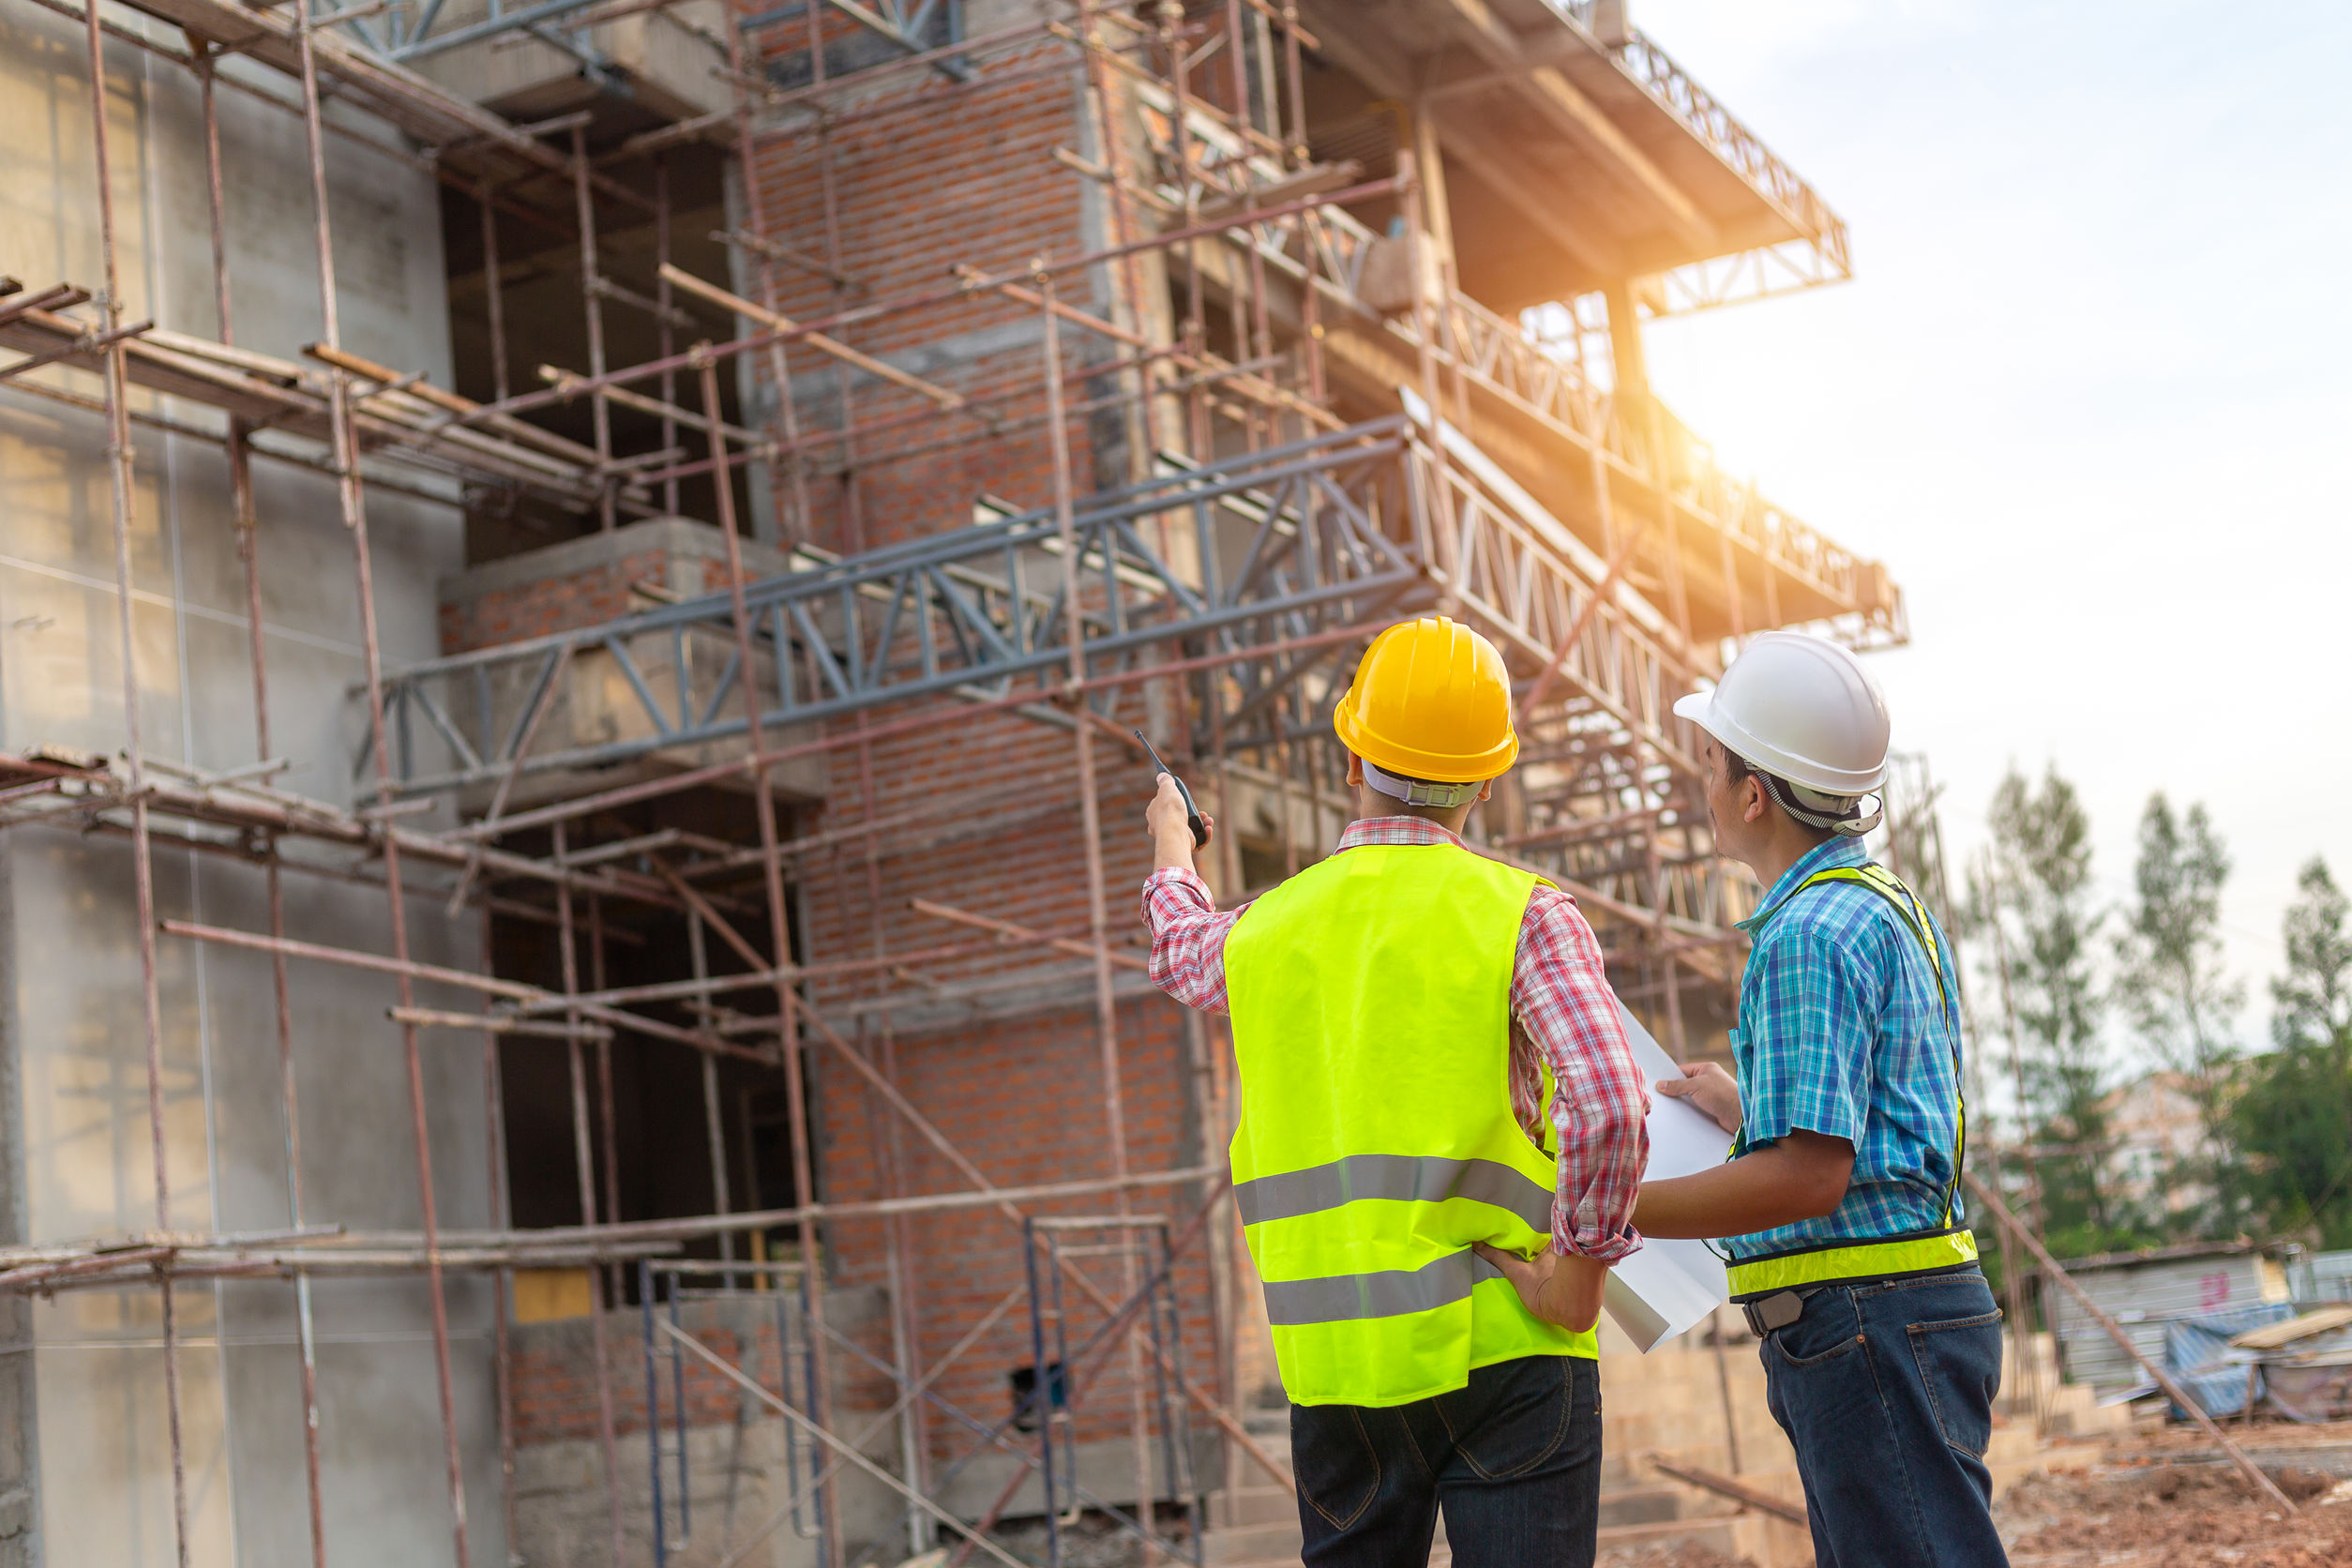 Construction Commercial Insurance Profile 1st Quarter 2022